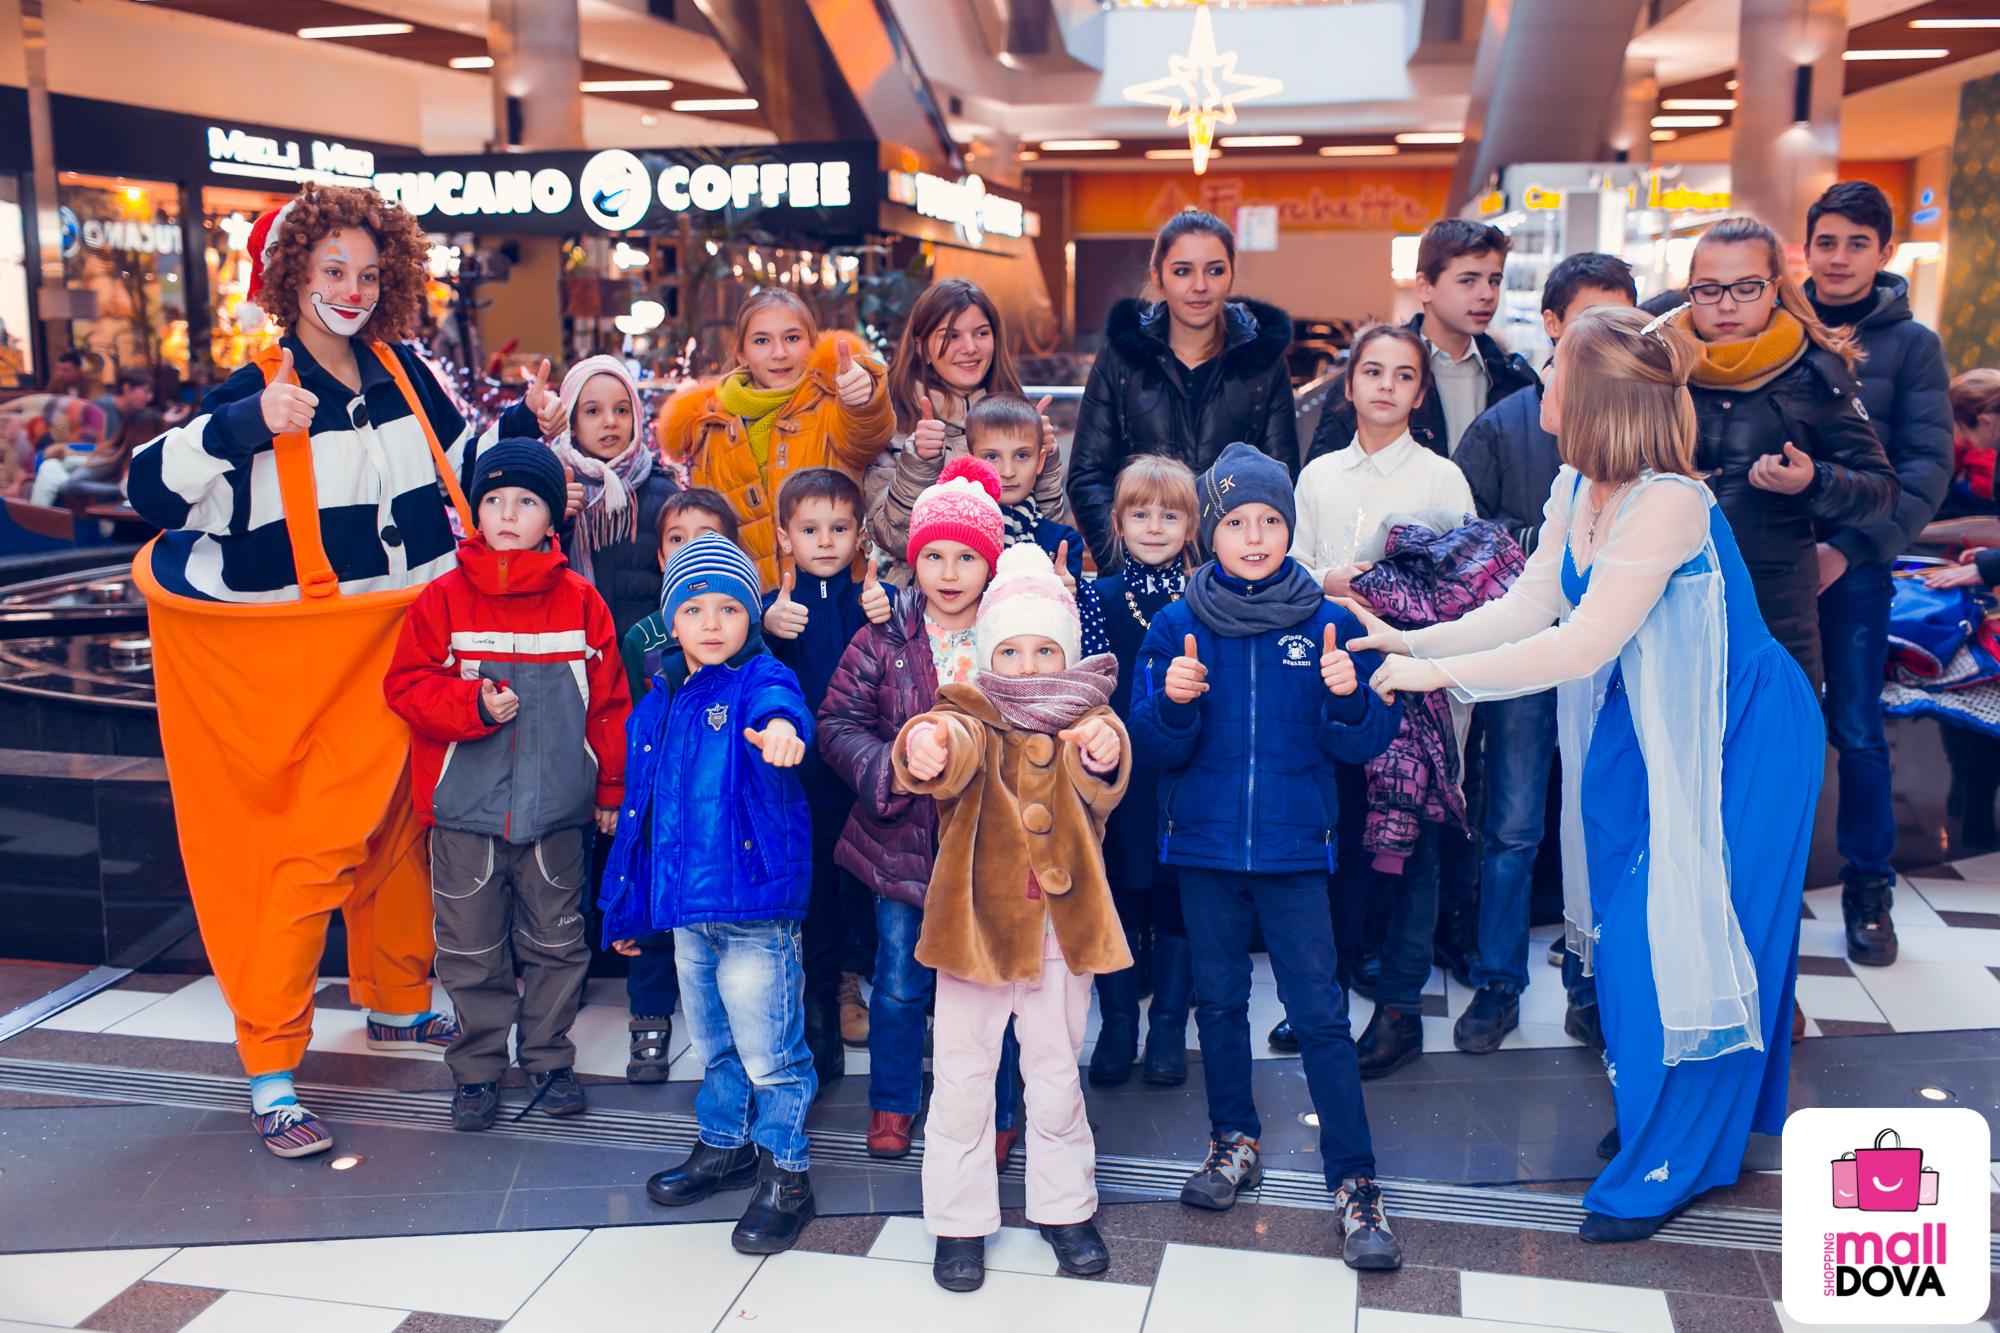 Звон колокольчиков и детские улыбки в торговом центре Shopping MallDova